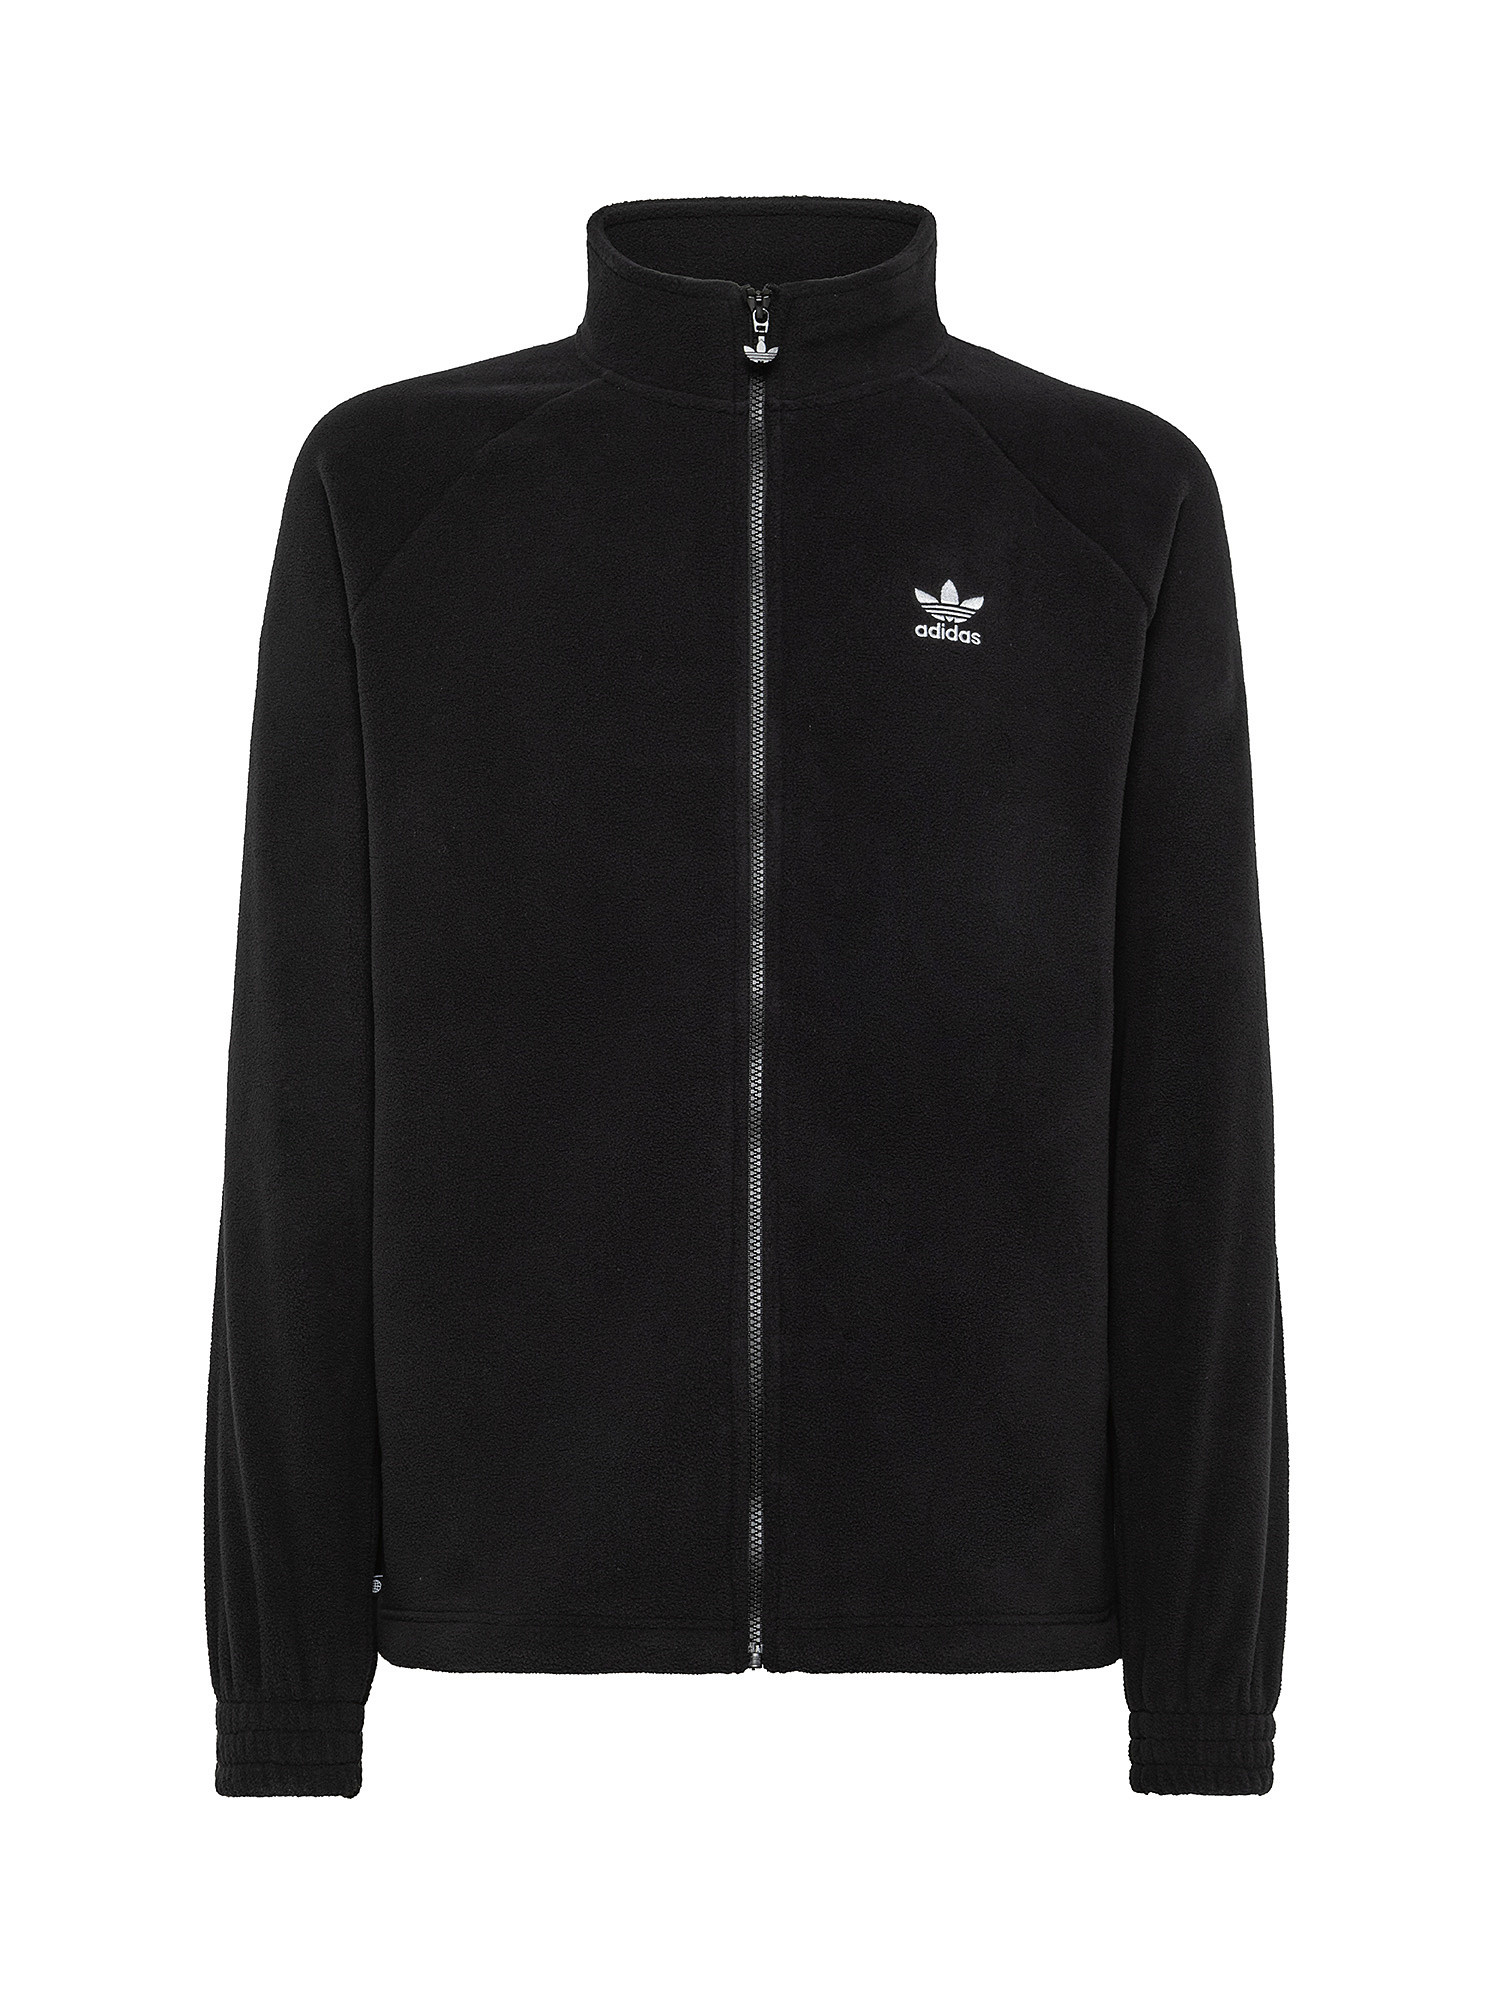 Adidas - Sweatshirt adicolor classics trefoil teddy fleece, Black, large image number 0